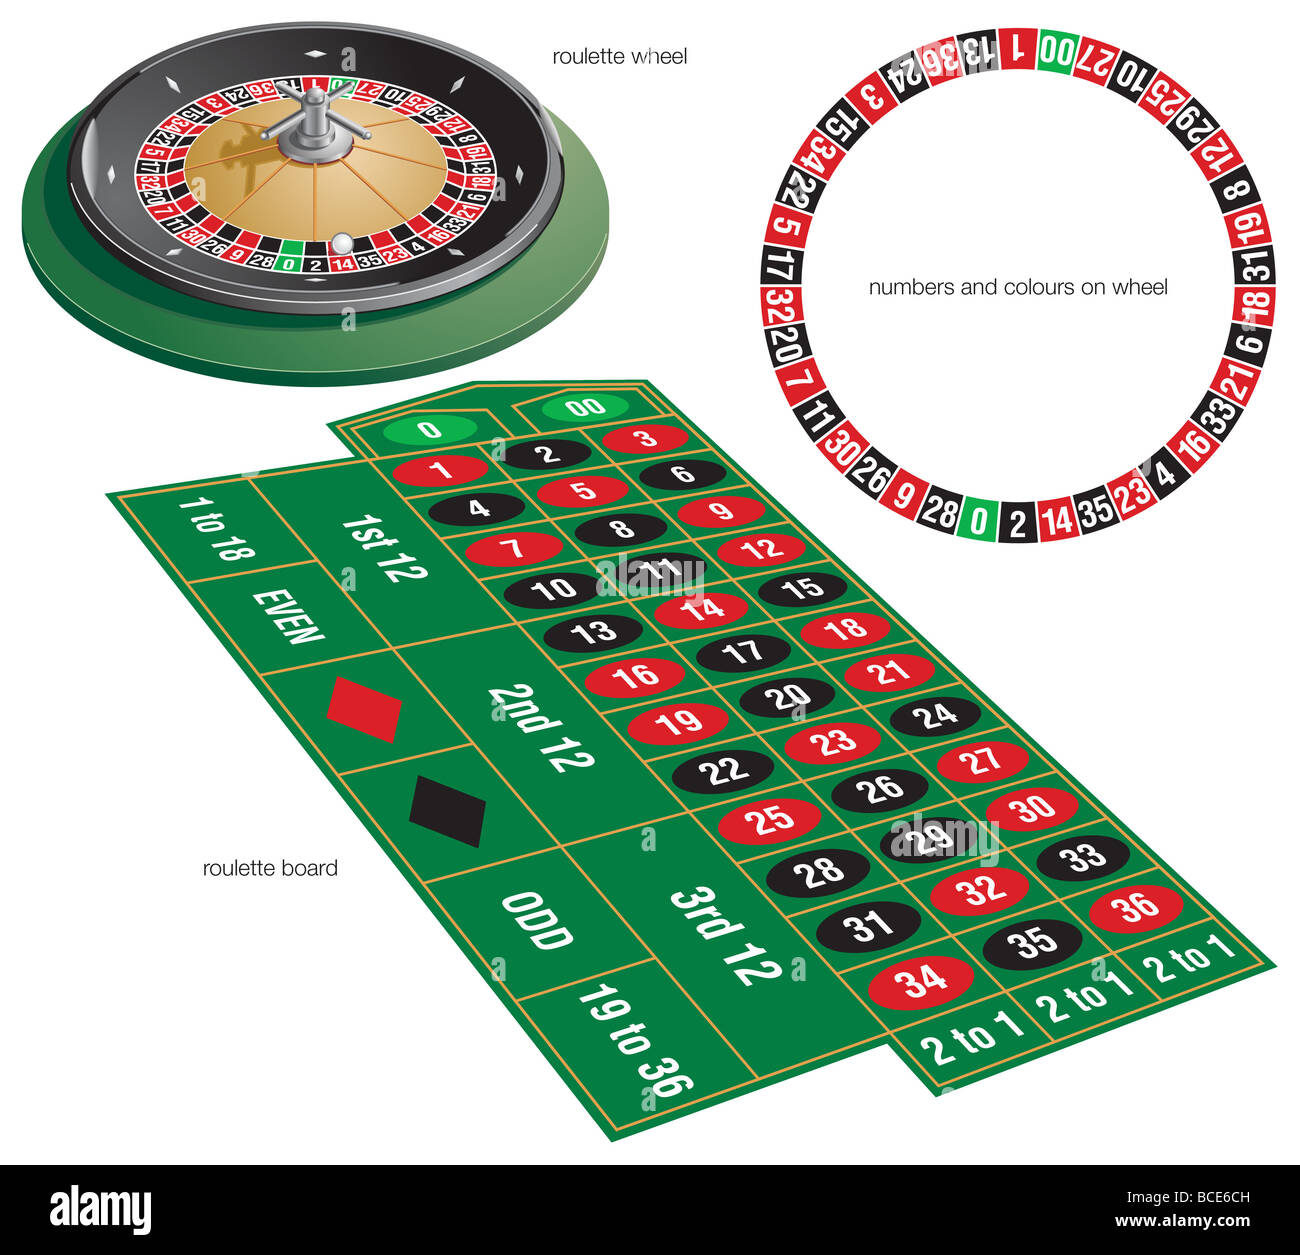 La roulette, un jeu dans lequel les joueurs parient dans un compartiment qui comptait de roue tournante une boule va s'arrêter. Banque D'Images